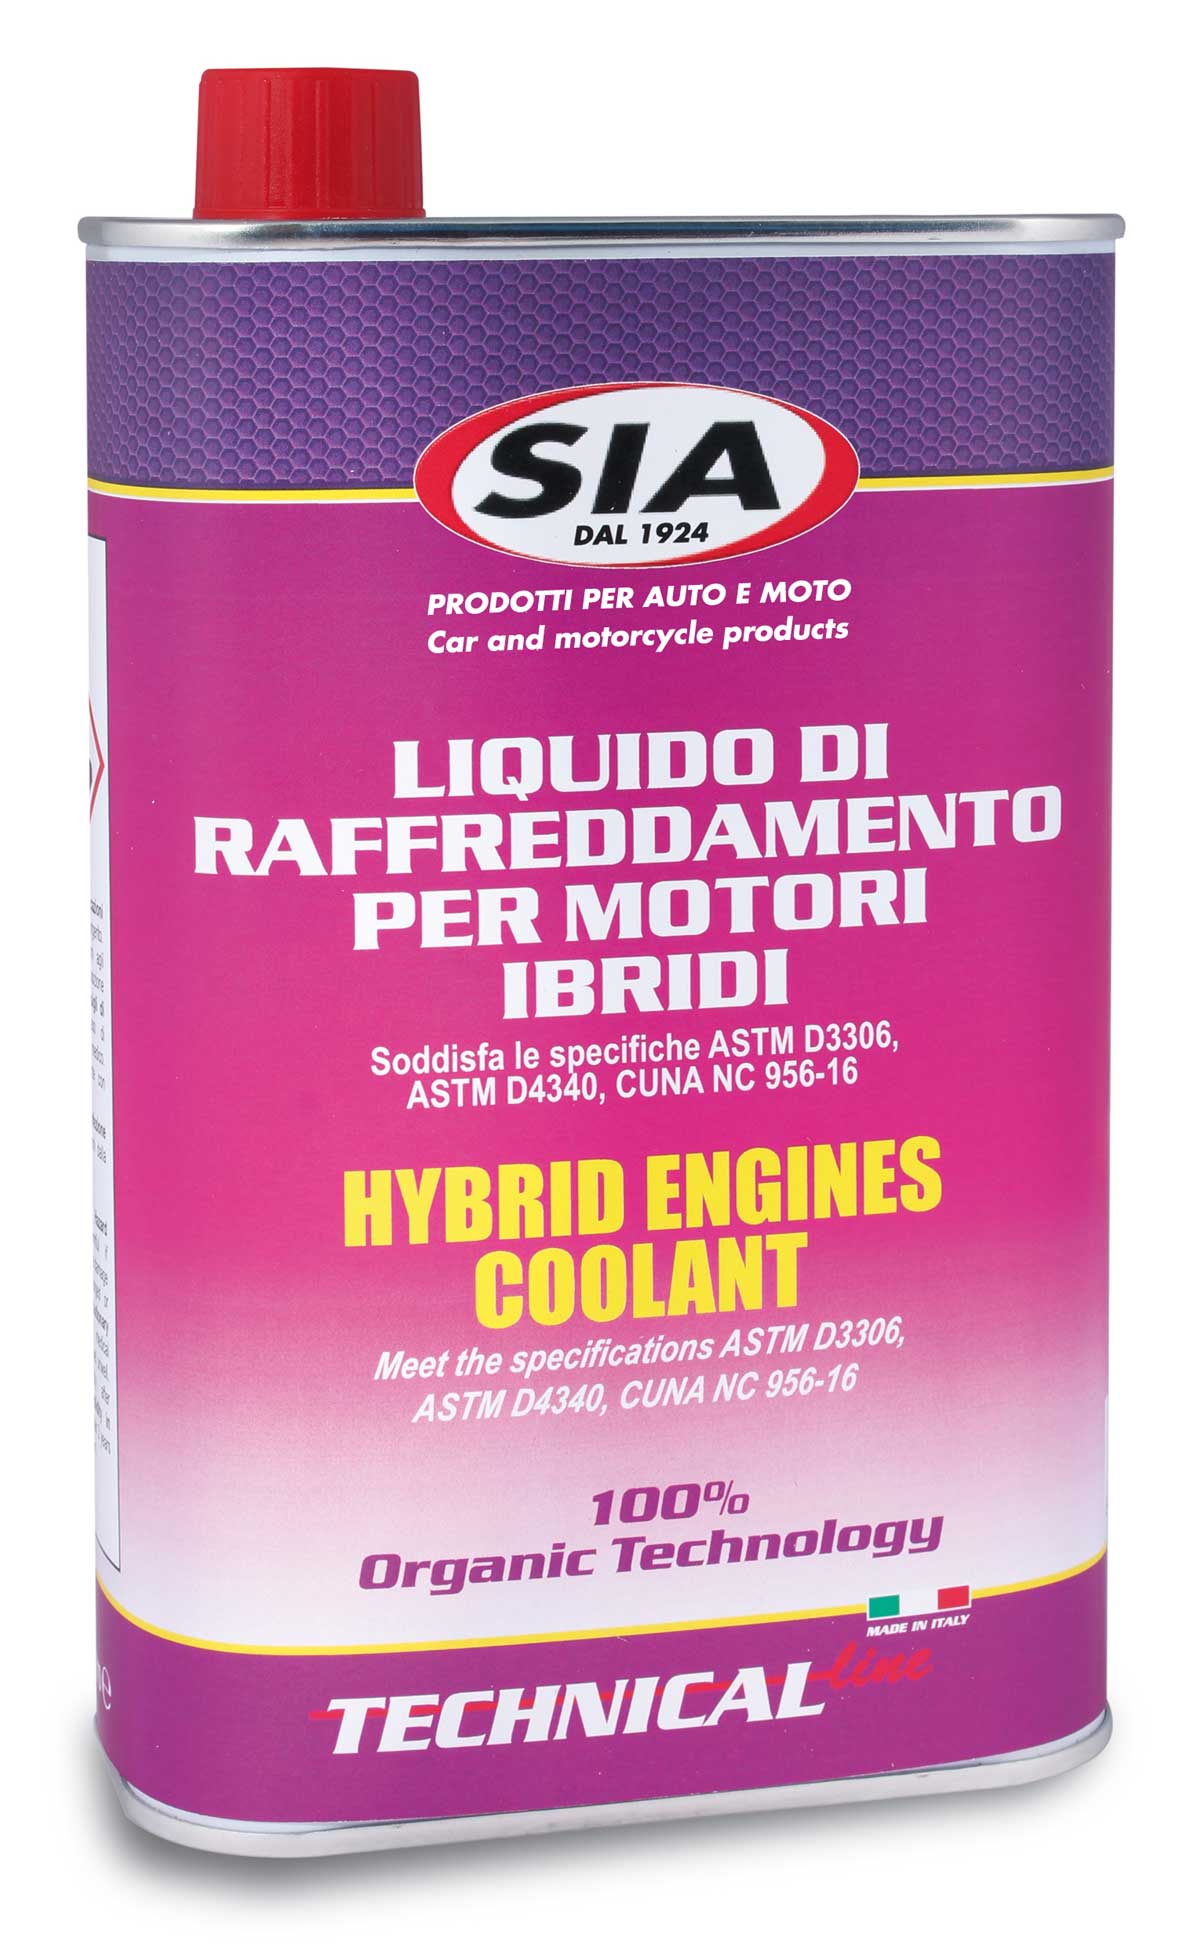 Liquido di raffreddamento per motori ibridi 4081